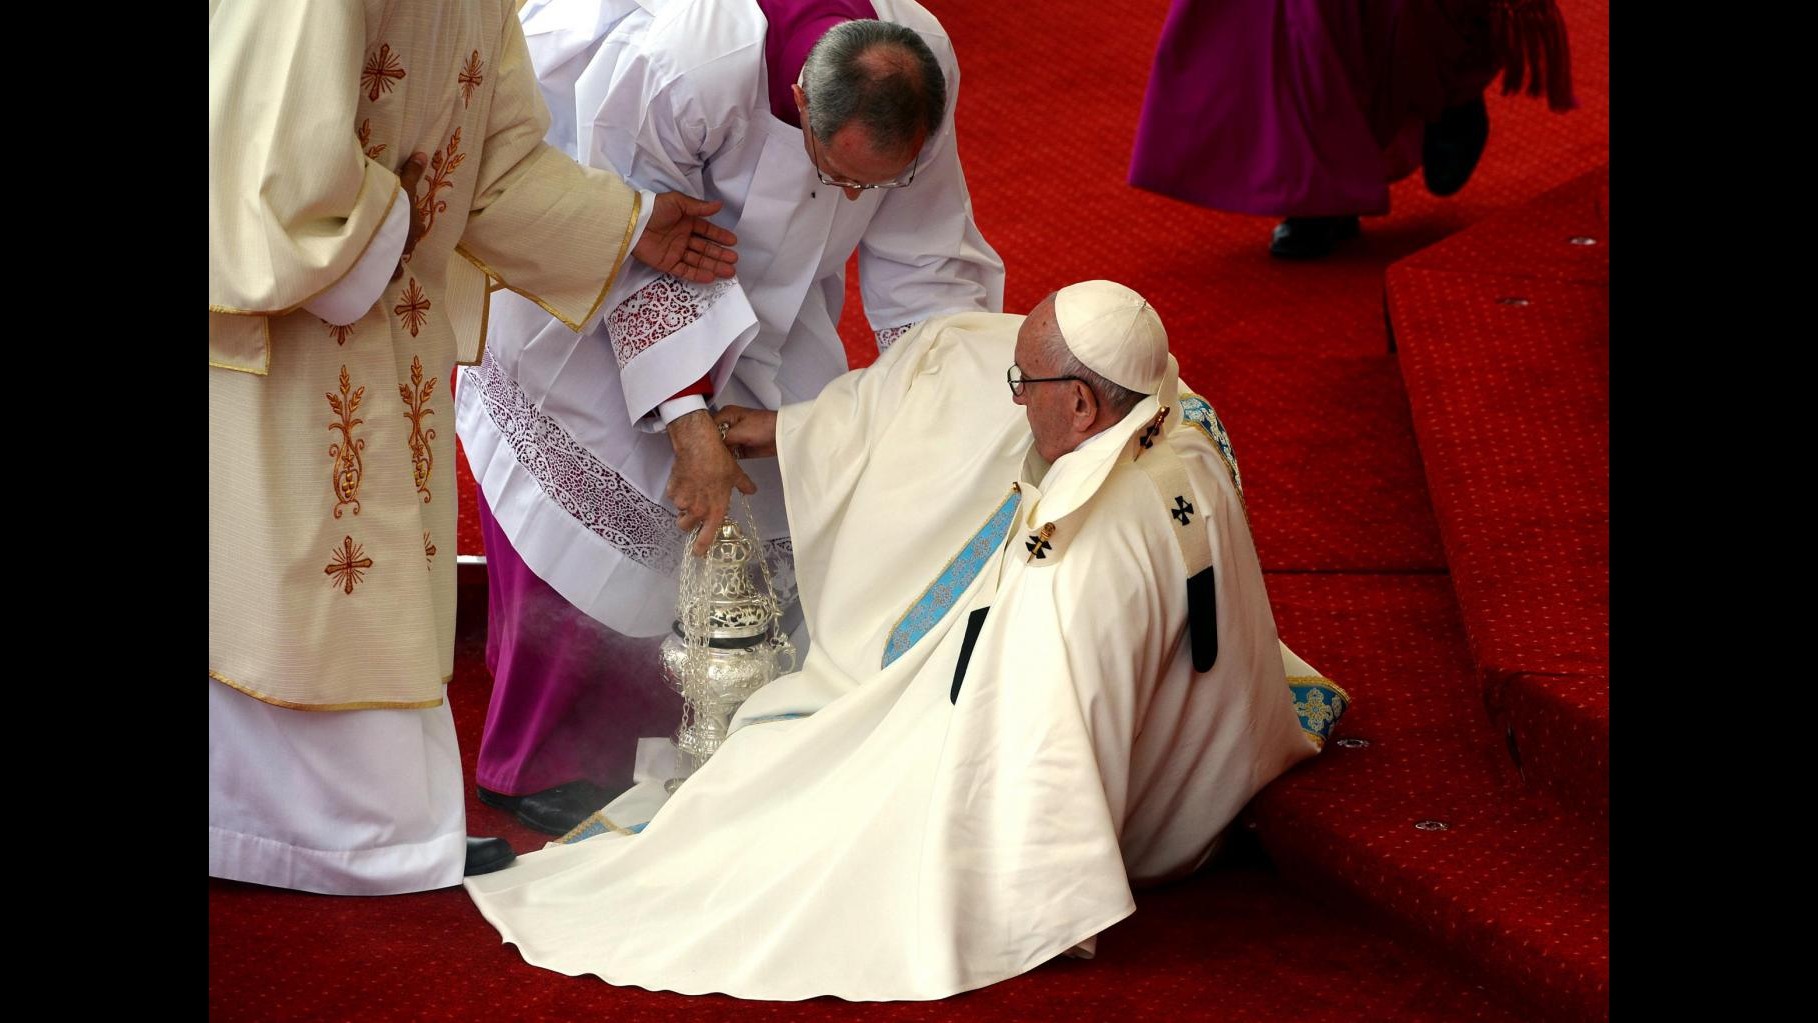 FOTO Polonia, il Papa inciampa, cade e poi si rialza